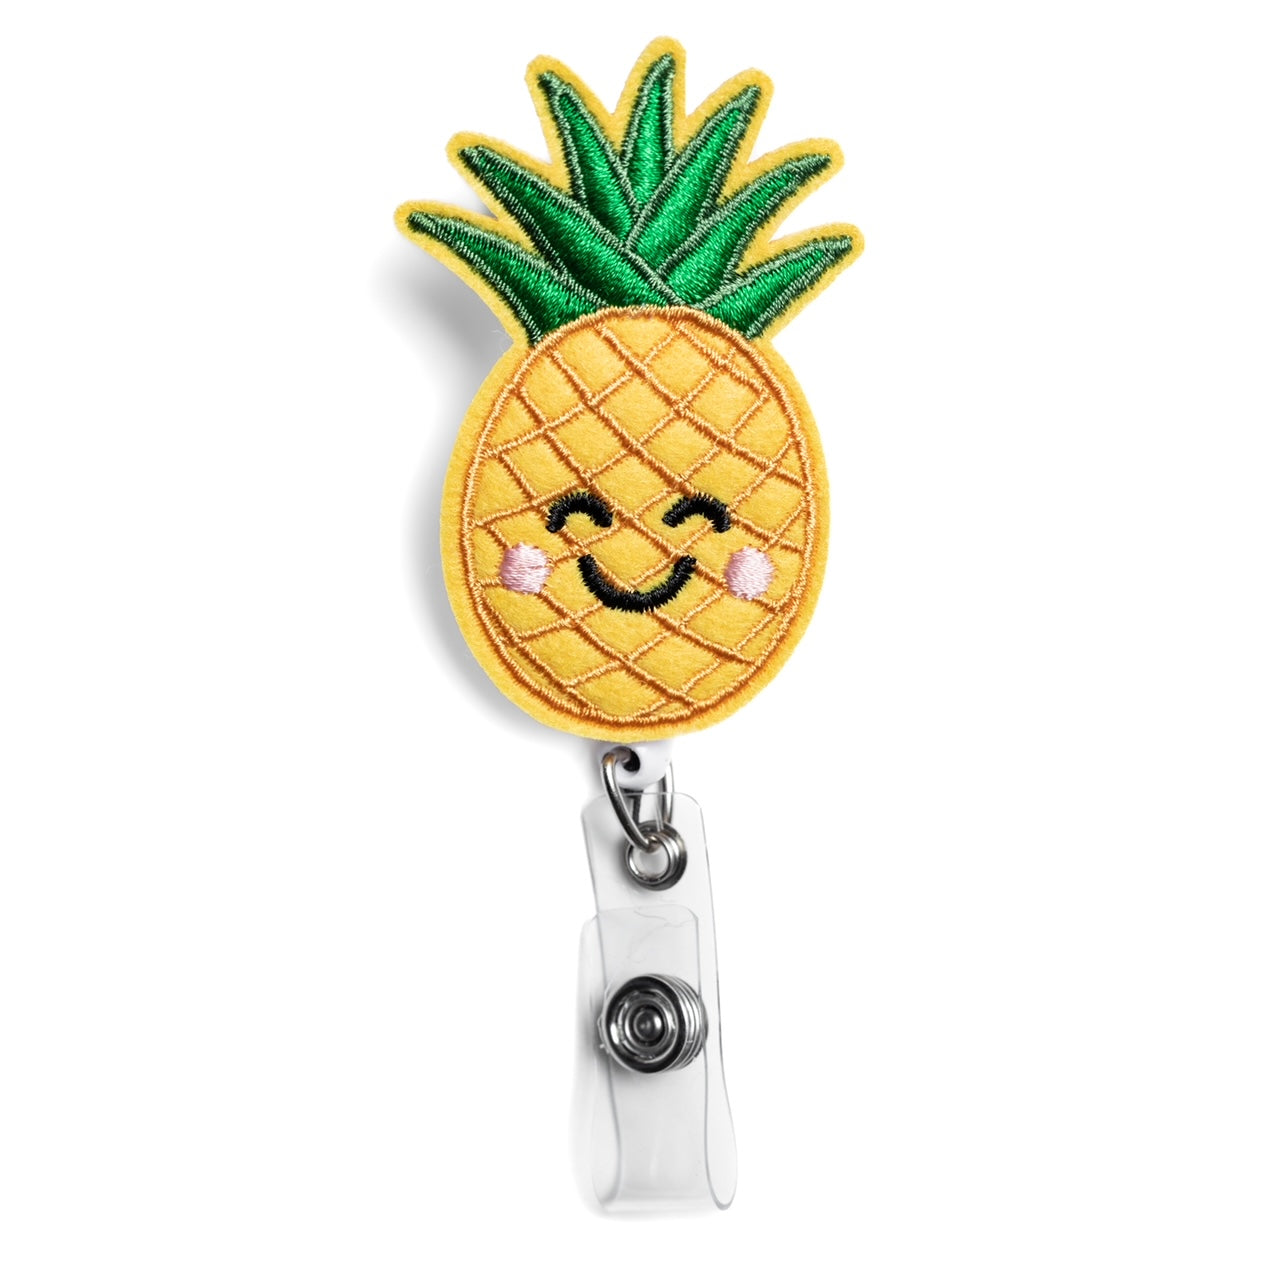 Pineapple Badge Holder